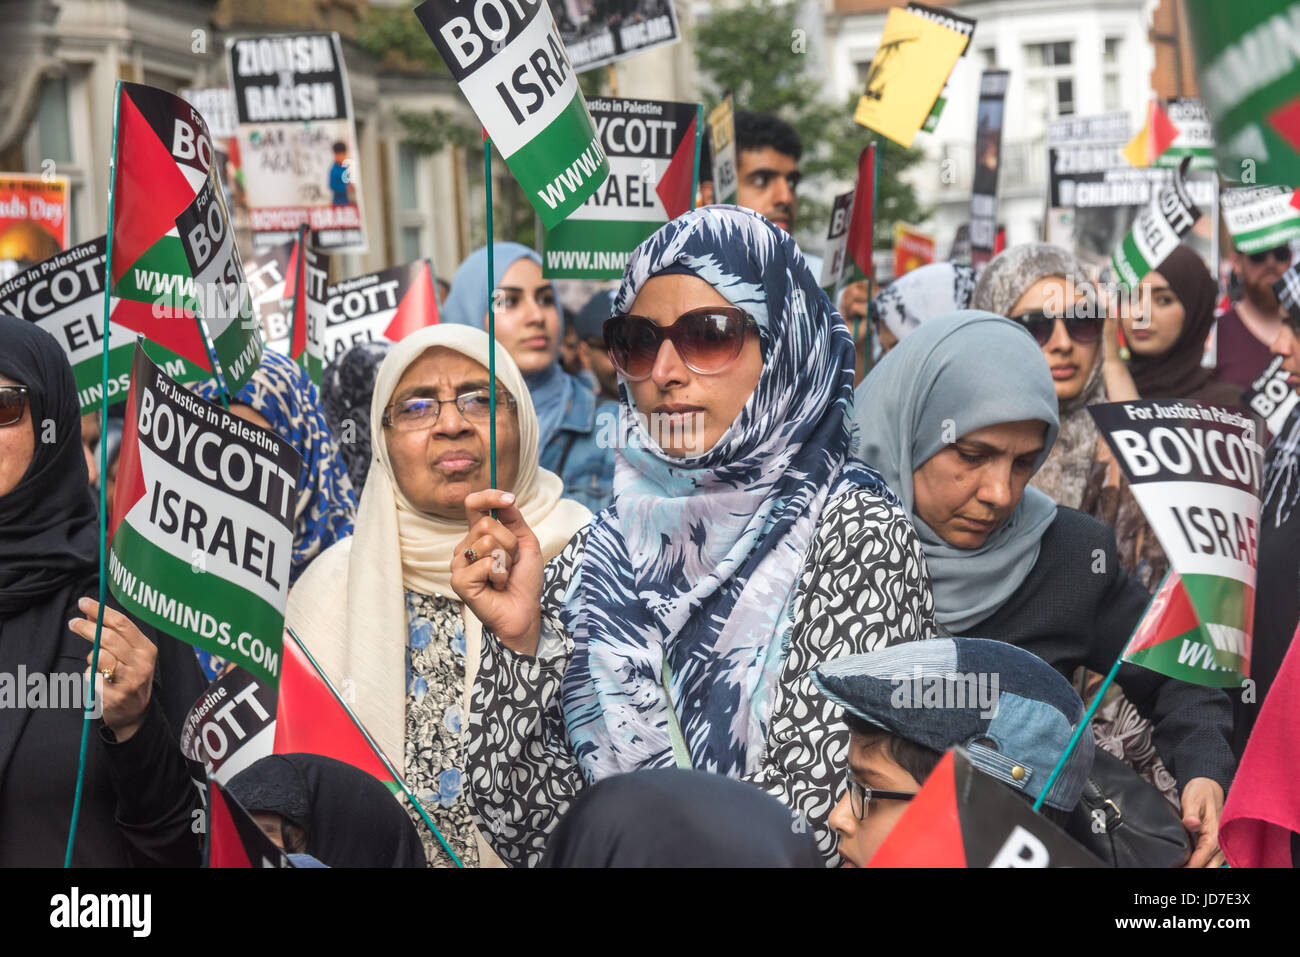 Londra, Regno Unito. Il 18 giugno, 2017. Londra, Regno Unito. Il 18 giugno 2017. Le donne sulla relazione annuale di Al Quds (Gerusalemme) giorno di marzo a Londra è stato frequentato da diverse migliaia di tutto il paese. Organizzato dal Comitato Quds con la Commissione islamica per i diritti dell'uomo e supportata da diversi gruppi tra cui l'arresto della coalizione bellica, associazione musulmana di Bretagna e gli ebrei per boicottare merci israeliane era guidato da imam e Neturei Karta anti-sionista di ebrei, è chiamato per la libertà per la Palestina e per tutti i popoli oppressi in tutto il mondo. Come di consueto in opposizione attratta da gruppi sionista, con un rally essendo hel Foto Stock